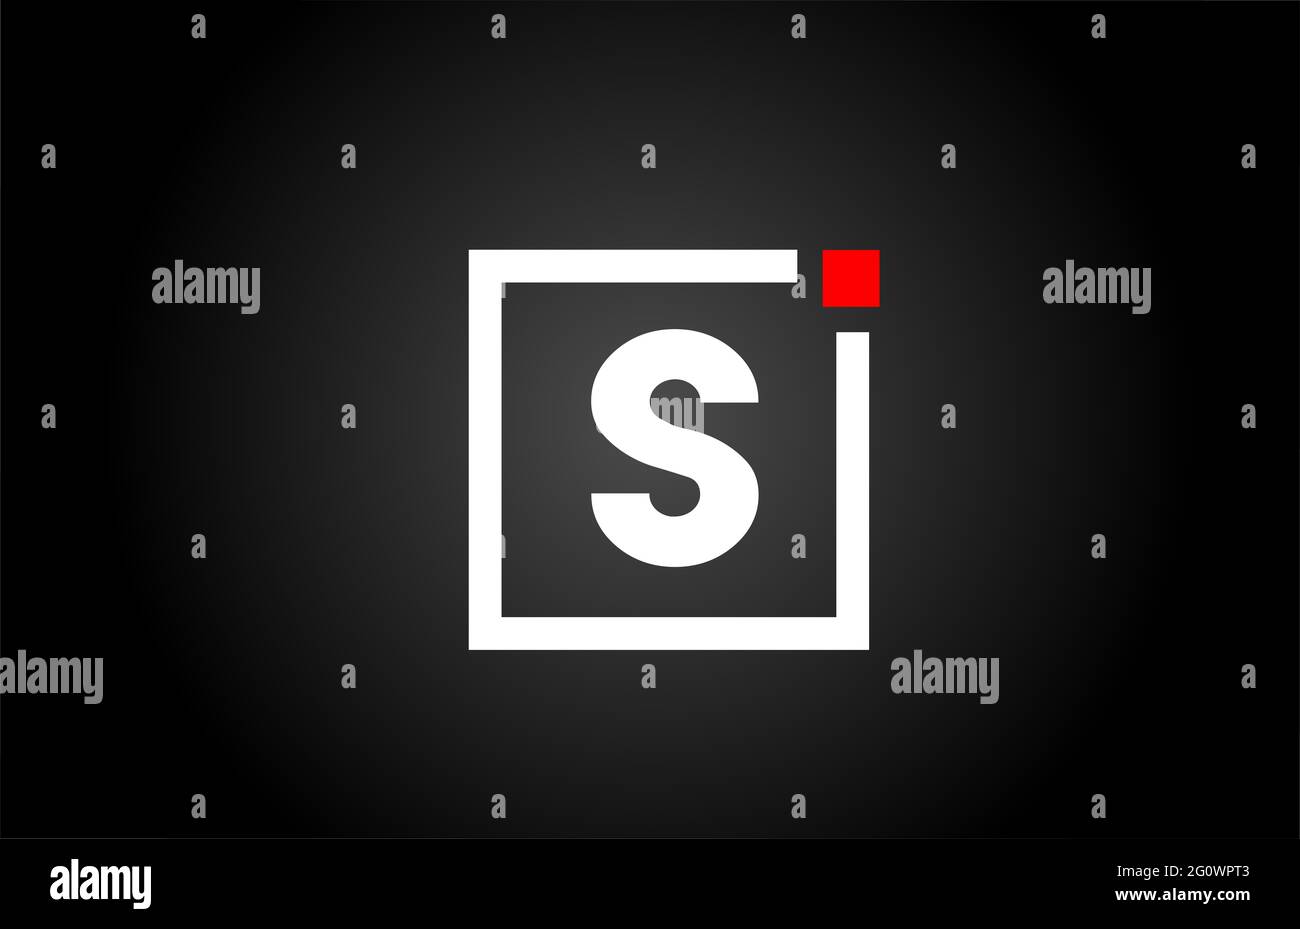 Logo con l'icona della lettera dell'alfabeto S in bianco e nero. Design aziendale e aziendale con punto quadrato e rosso. Modello di identità aziendale creativa Foto Stock